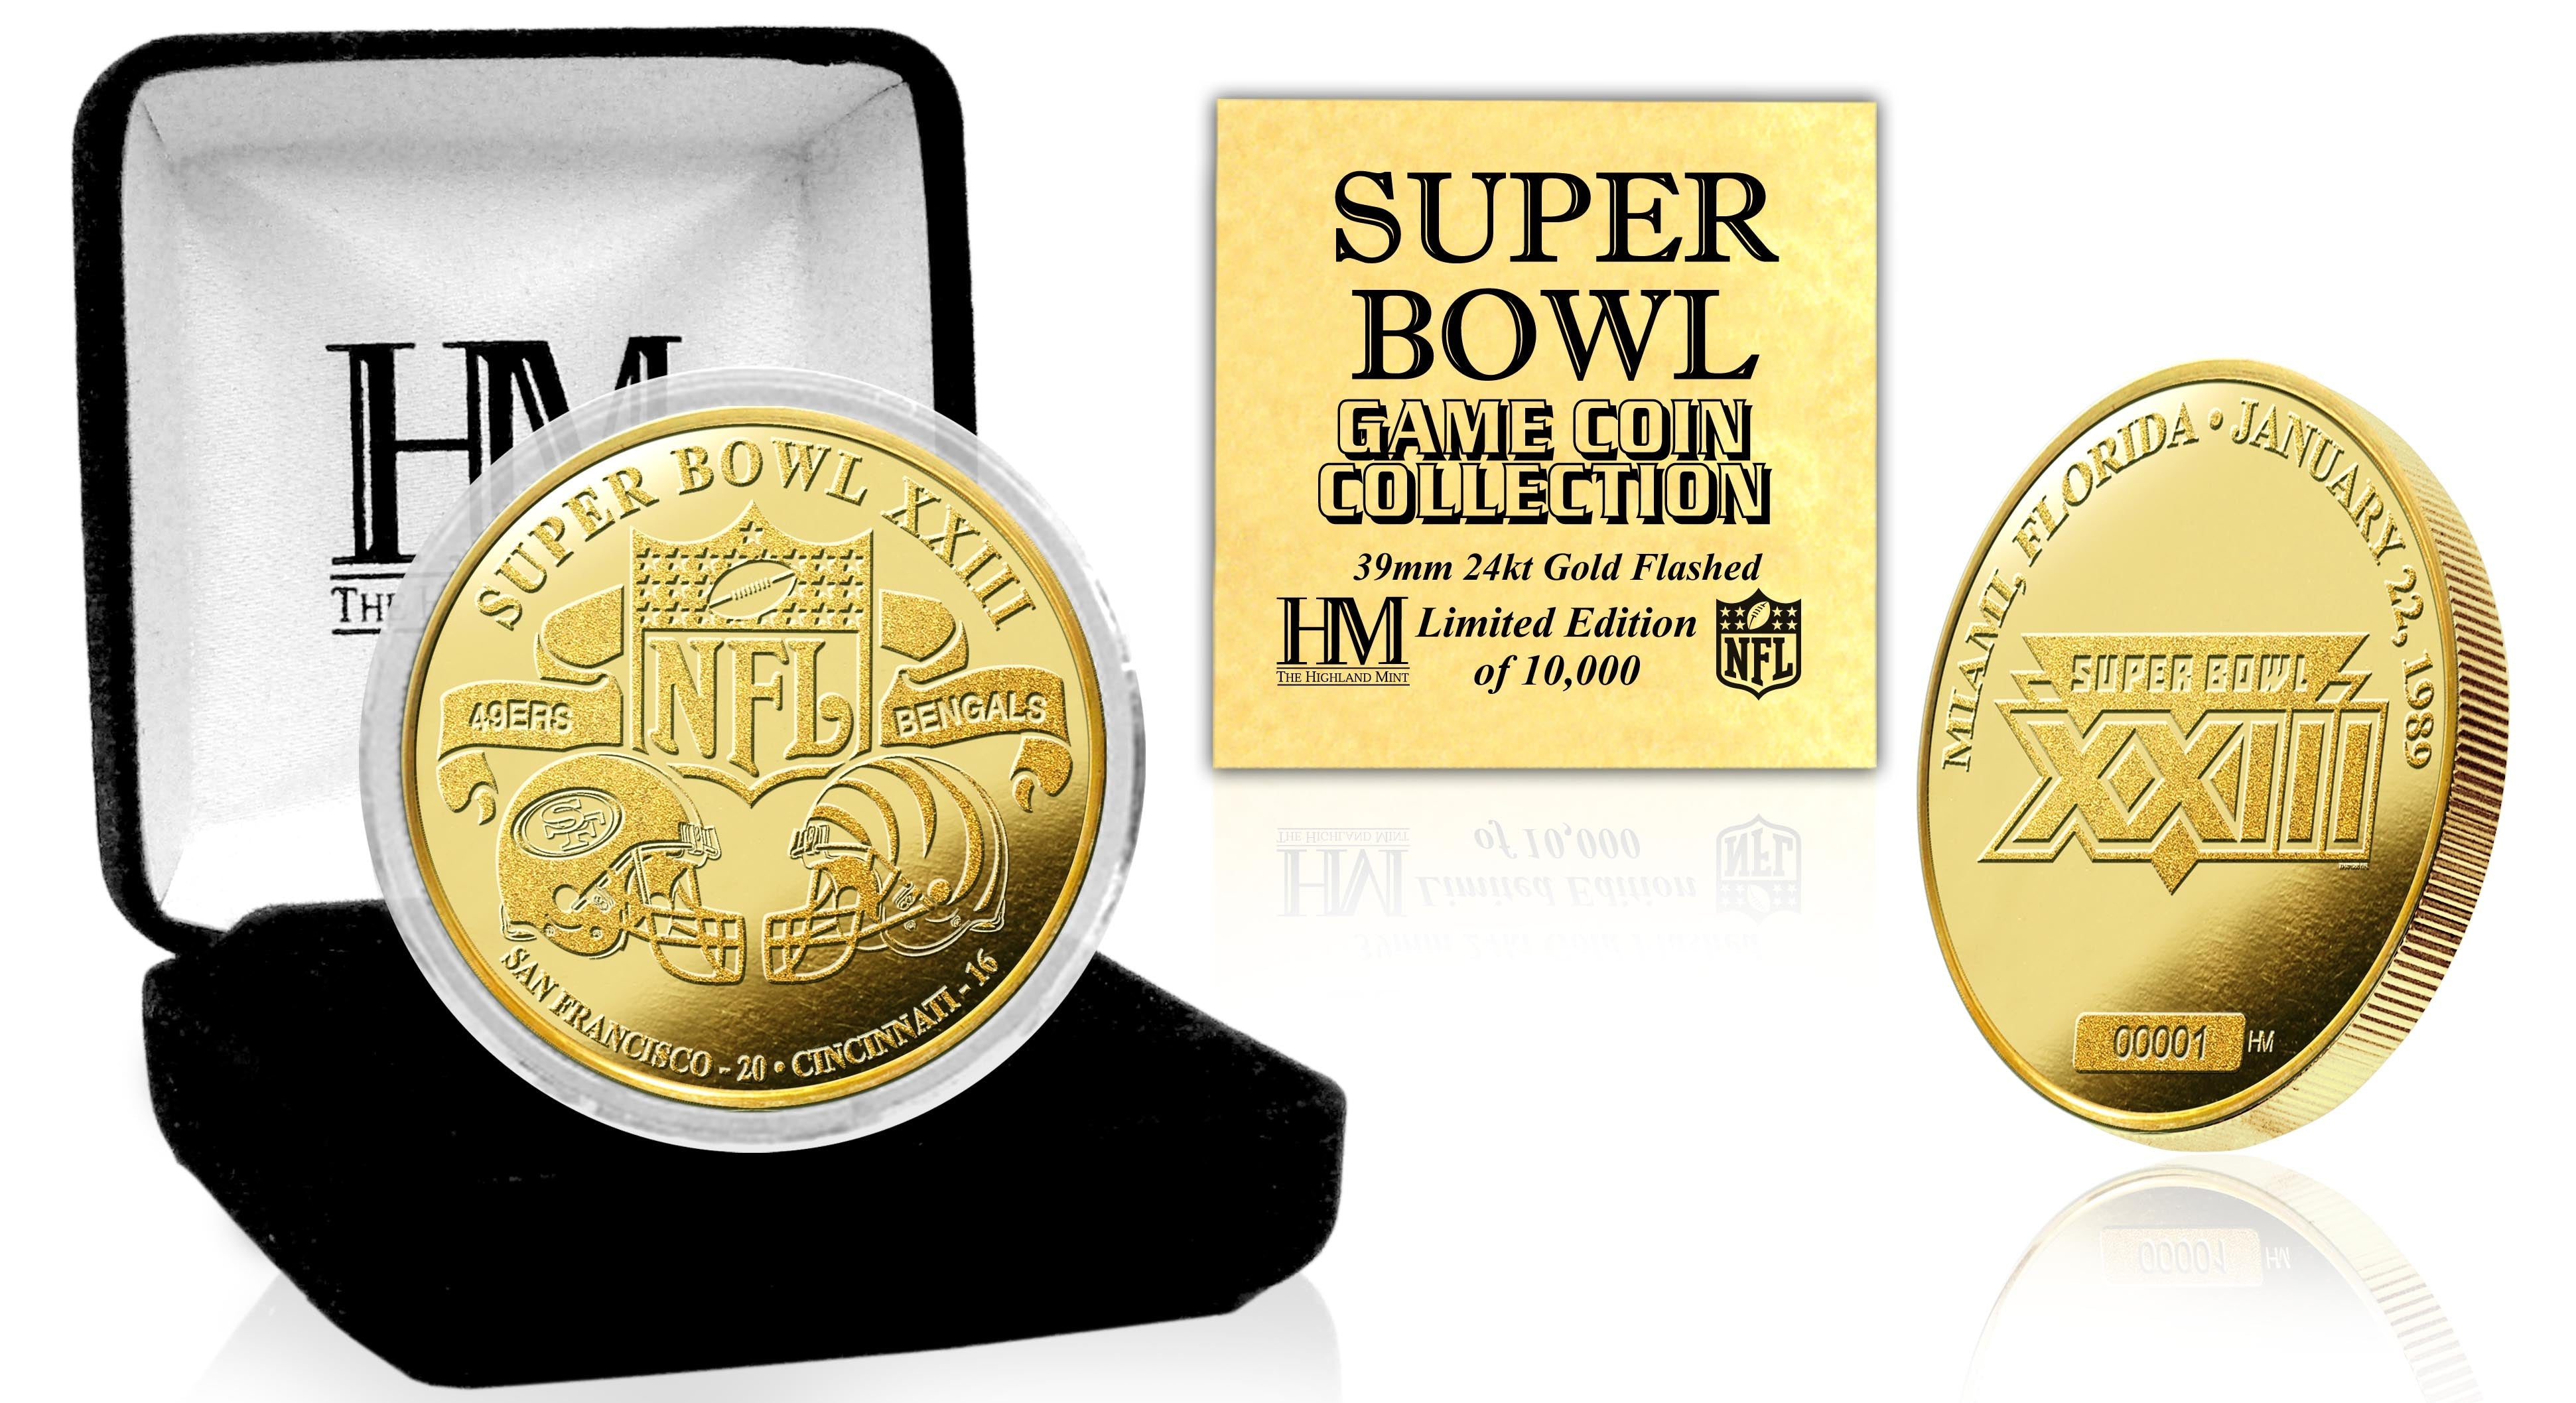 Super Bowl XXIII 24kt Gold Flip Coin